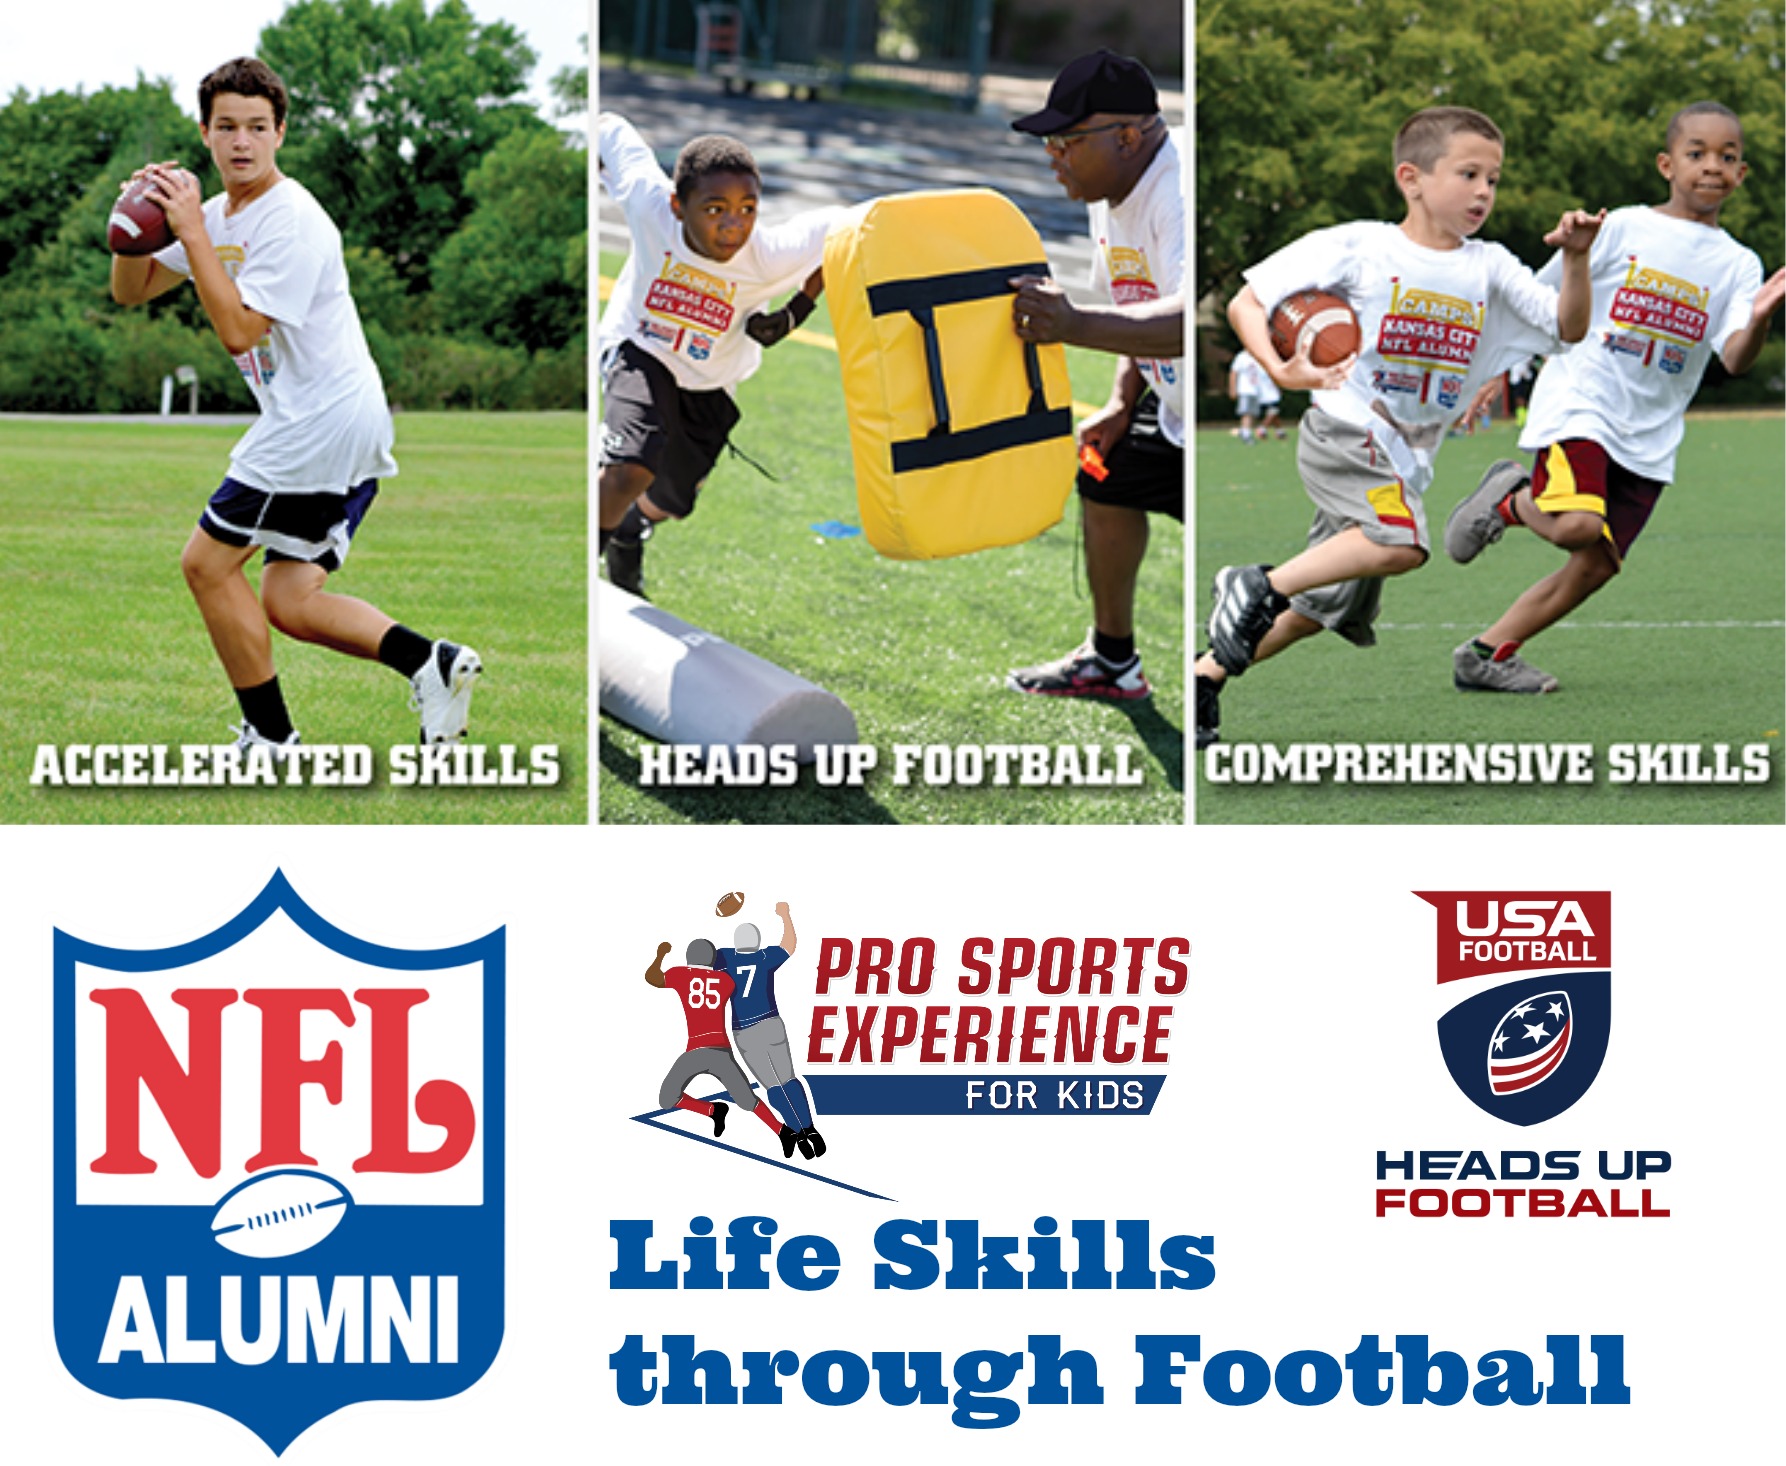 Kansas City NFL Alumni Hero Youth Football Camps Pro Sports Experience